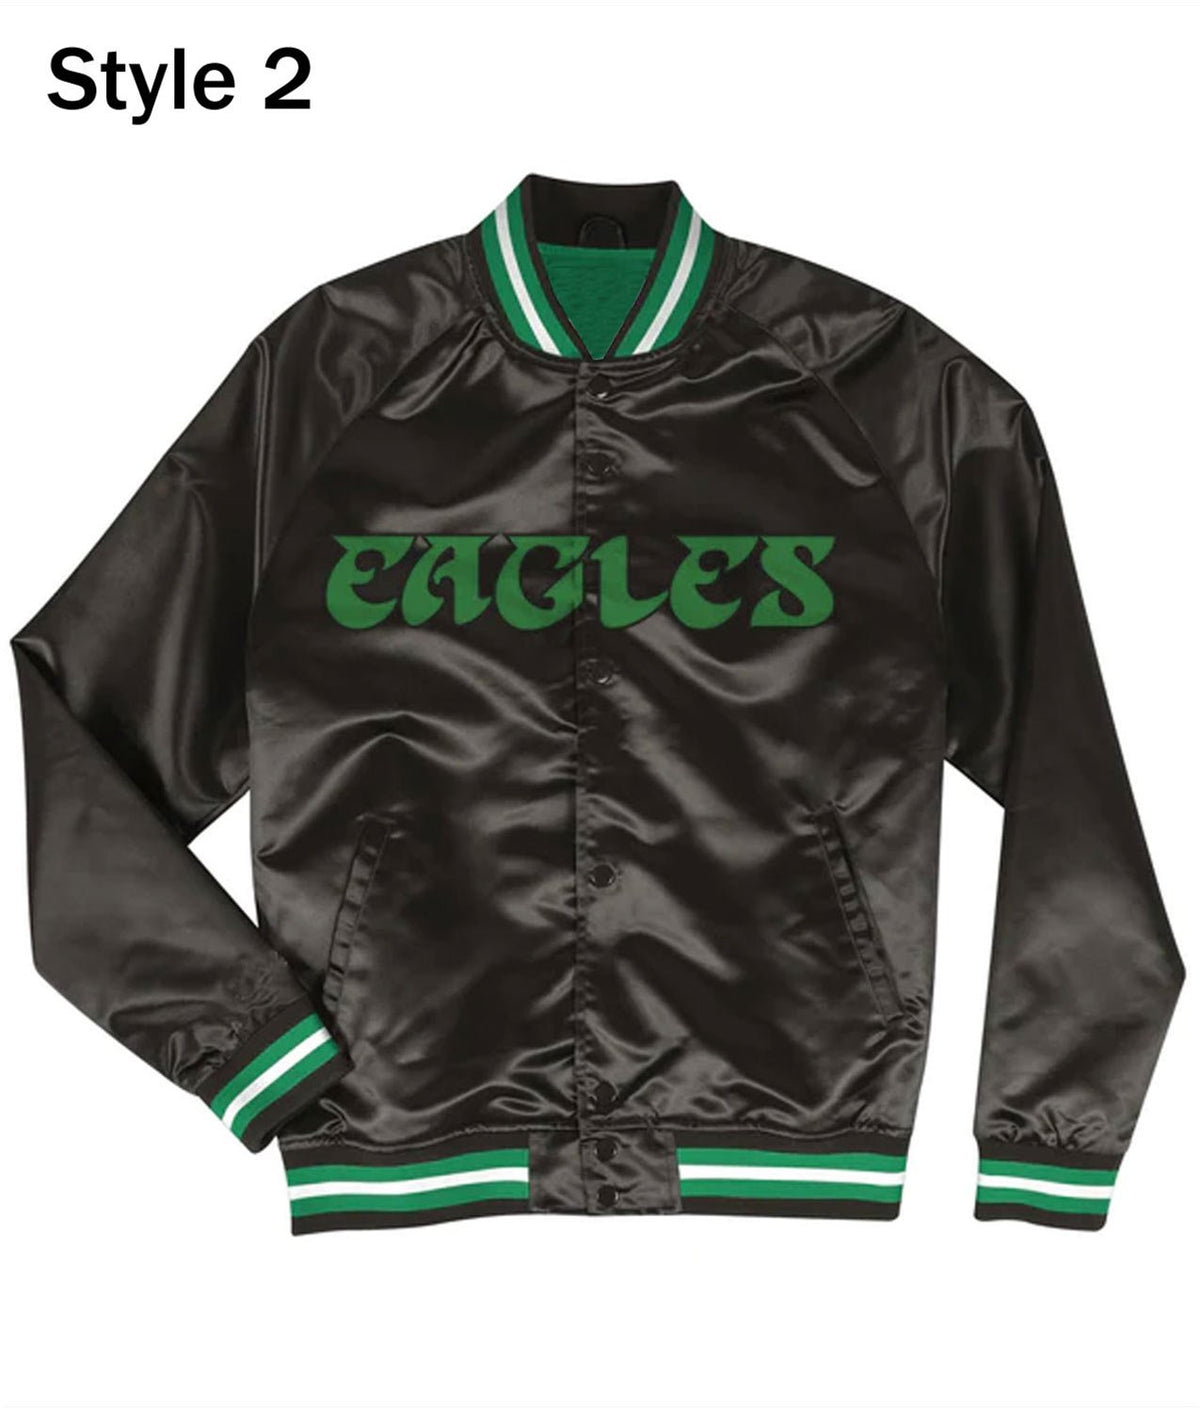 NFL Philadelphia Eagles Black Jacket